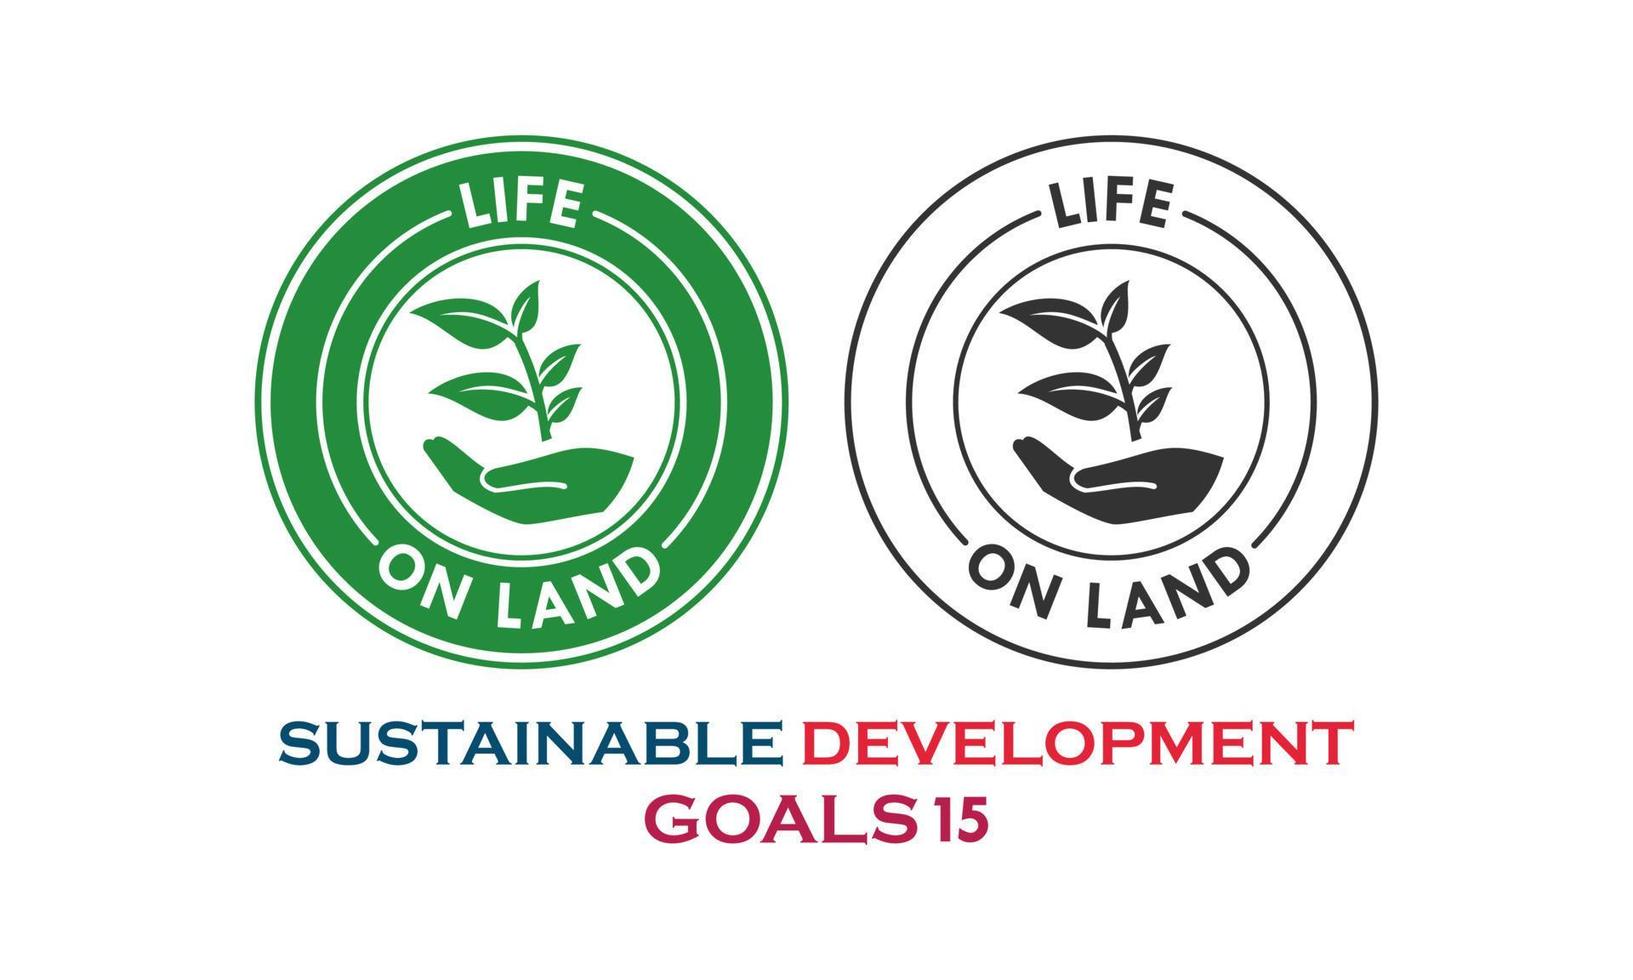 nachhaltige Entwicklungsziele, Leben an Land Artikel vektor